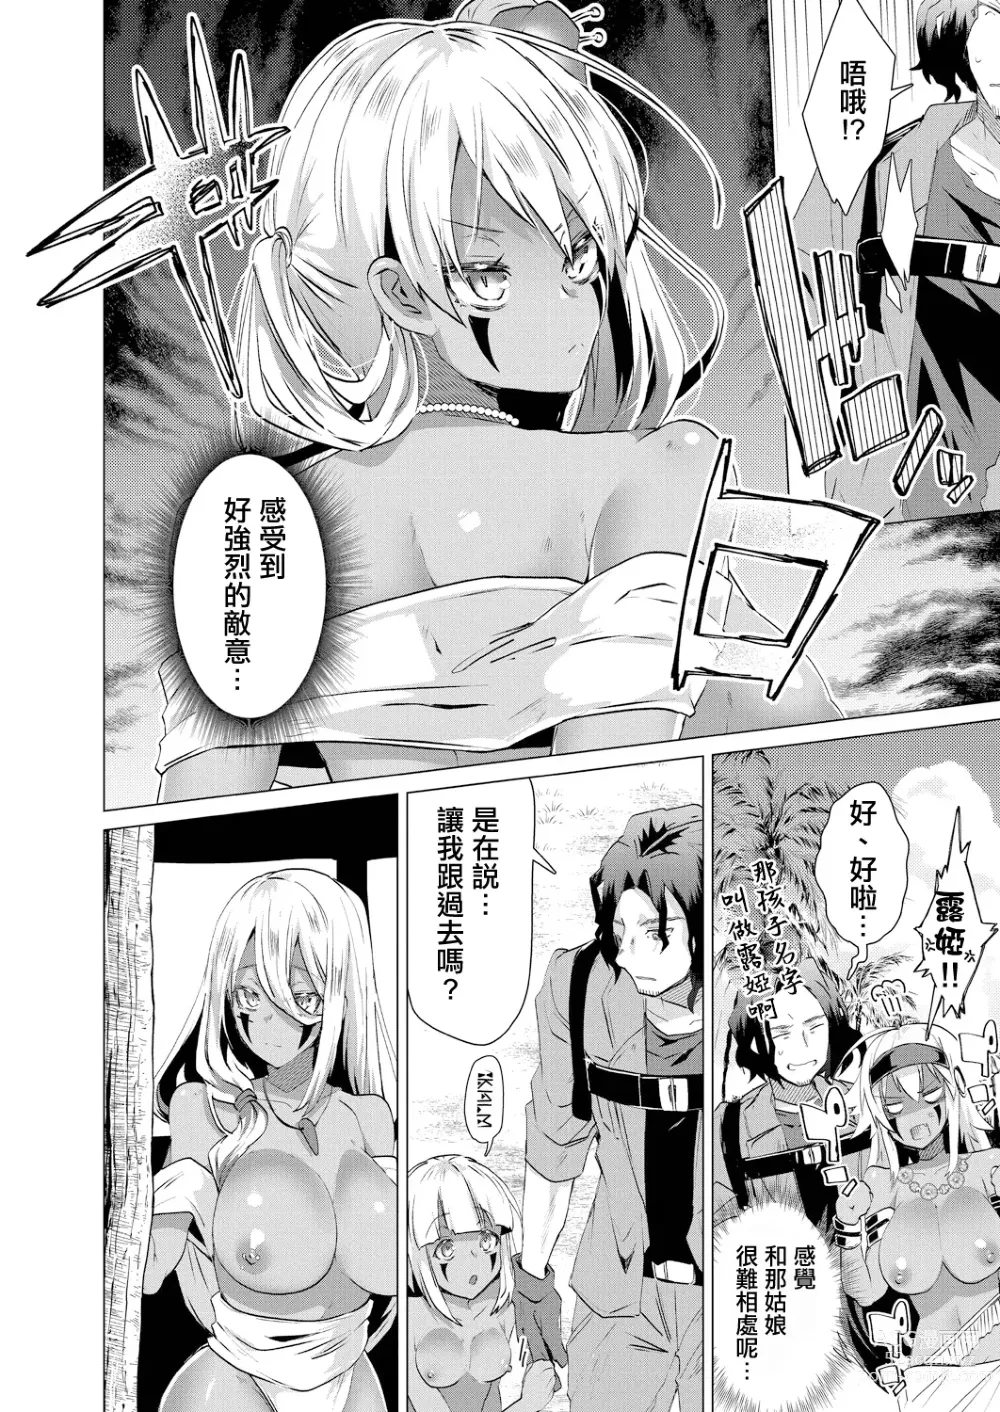 Page 4 of manga Kassyoku Musume no Harem Shima - Harem Island of Brown Girl Ch. 2